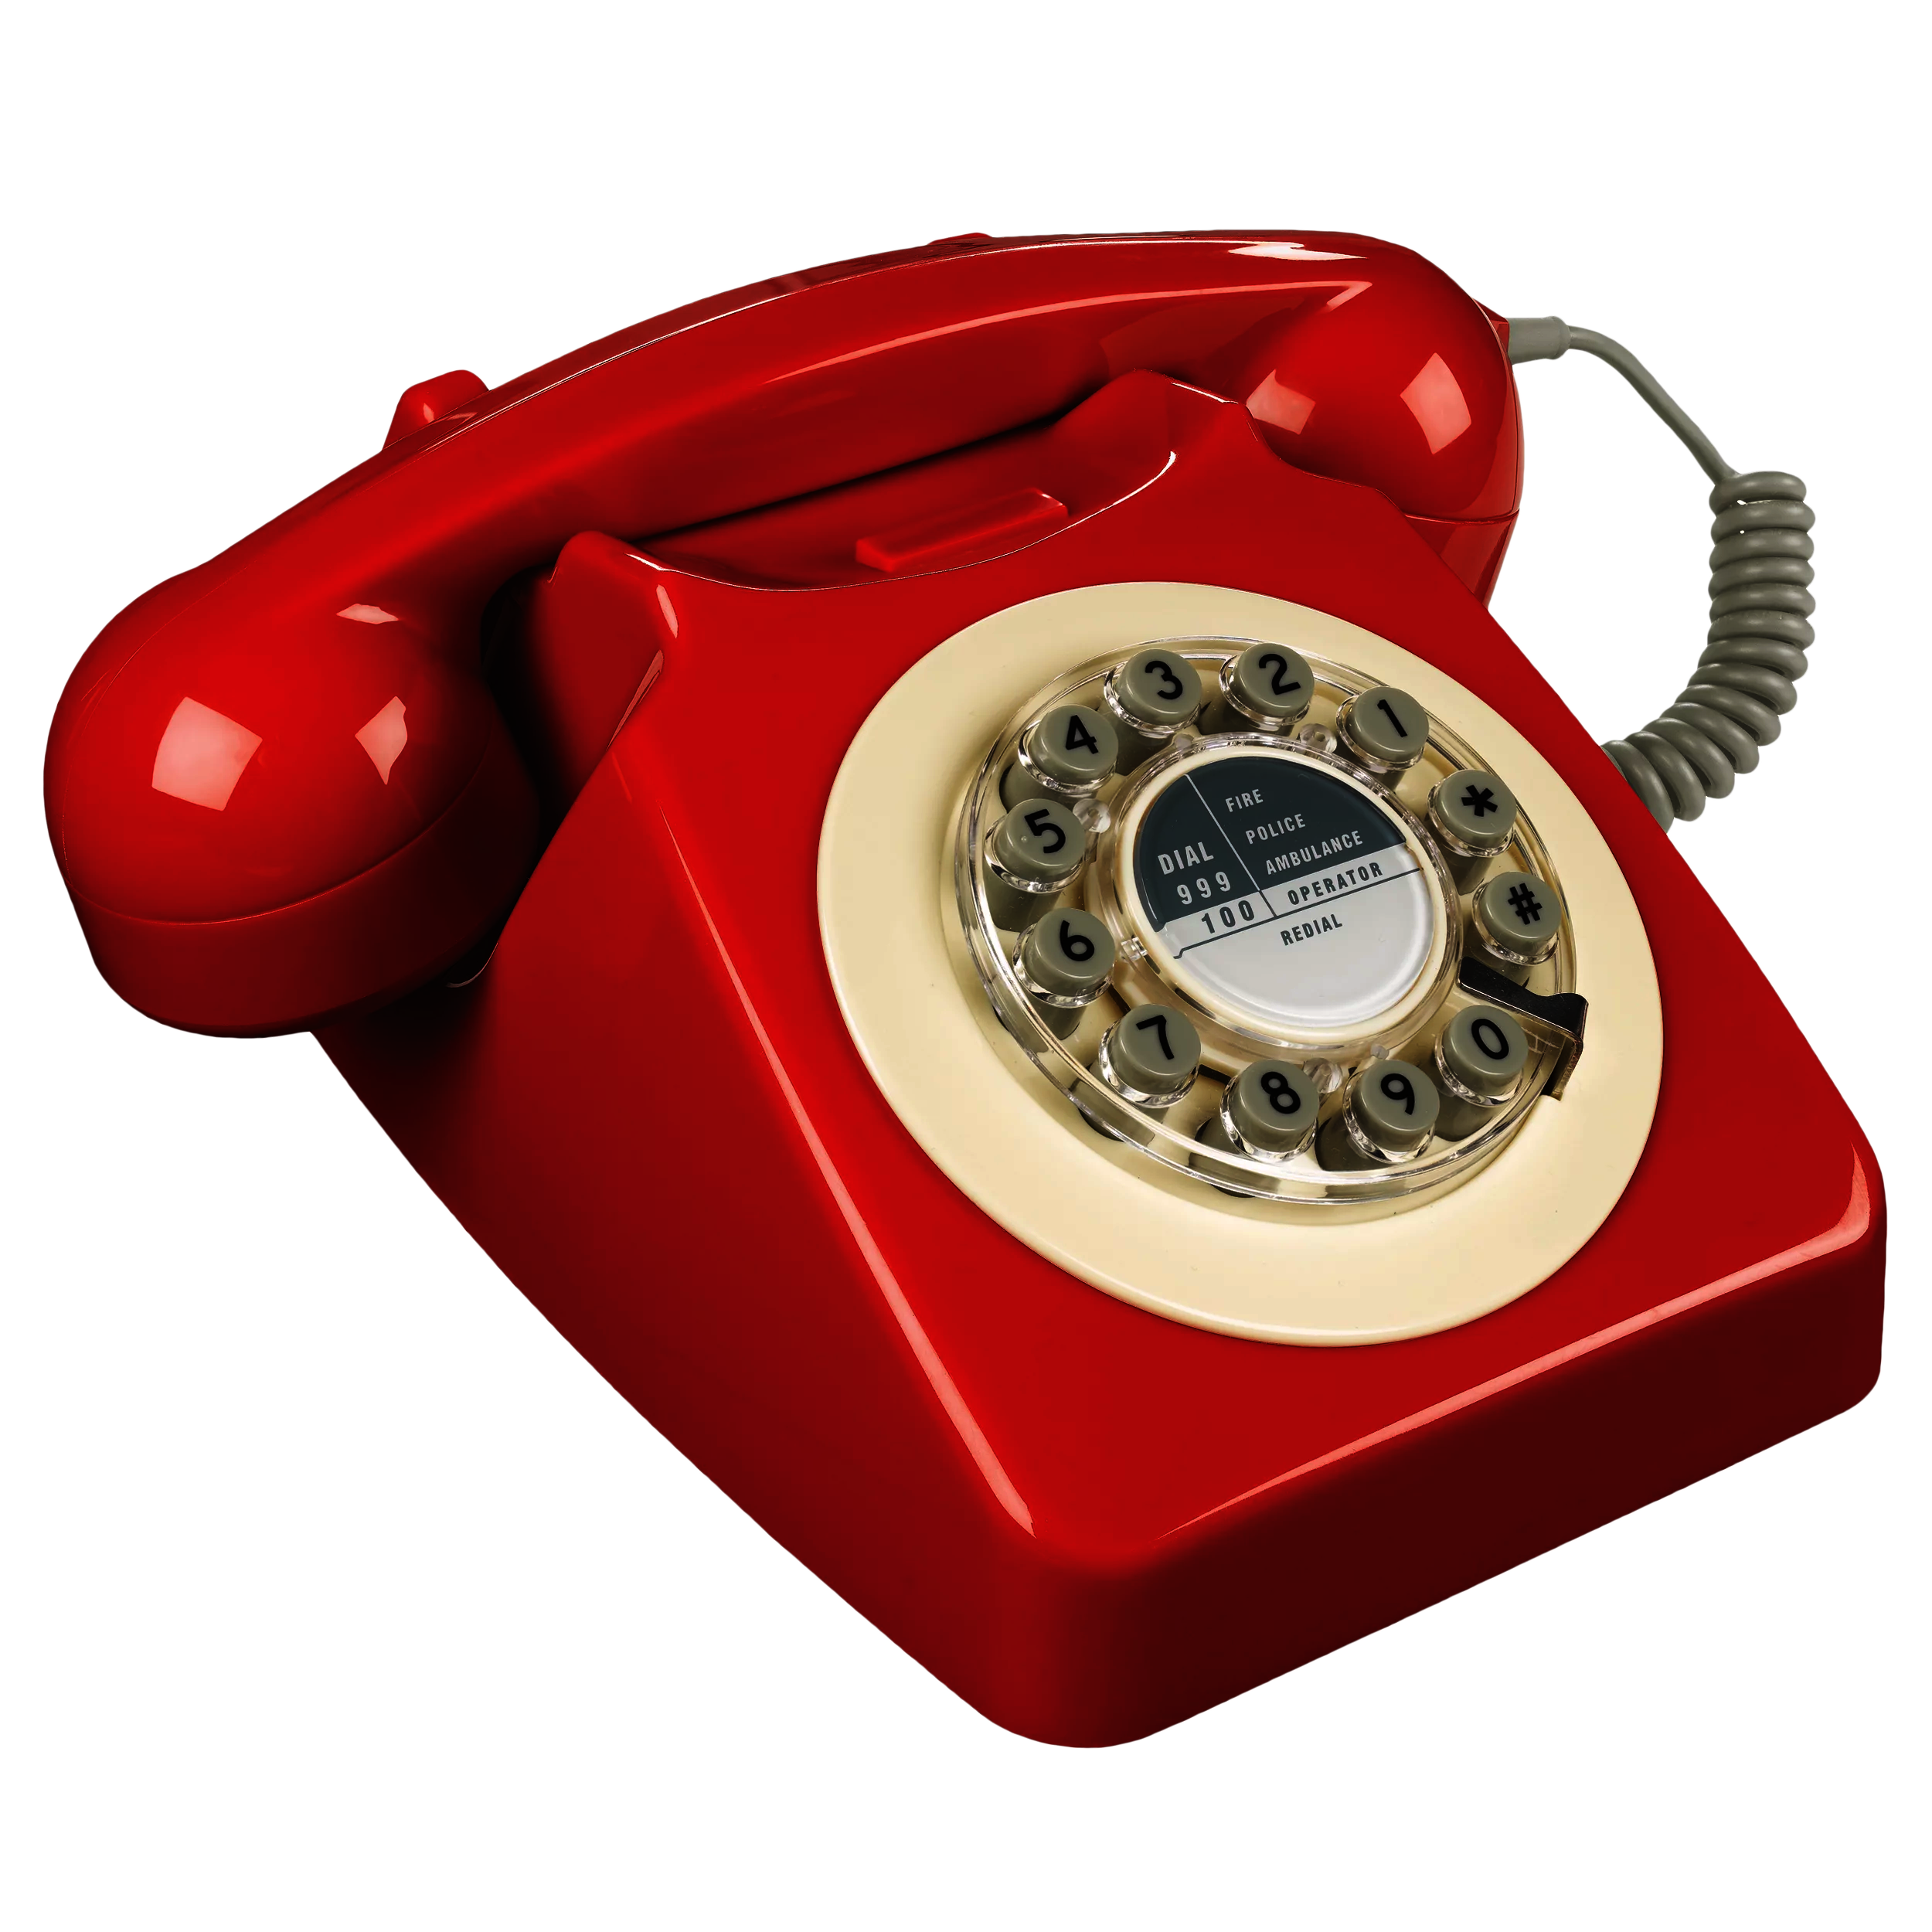 oldschool red telephone